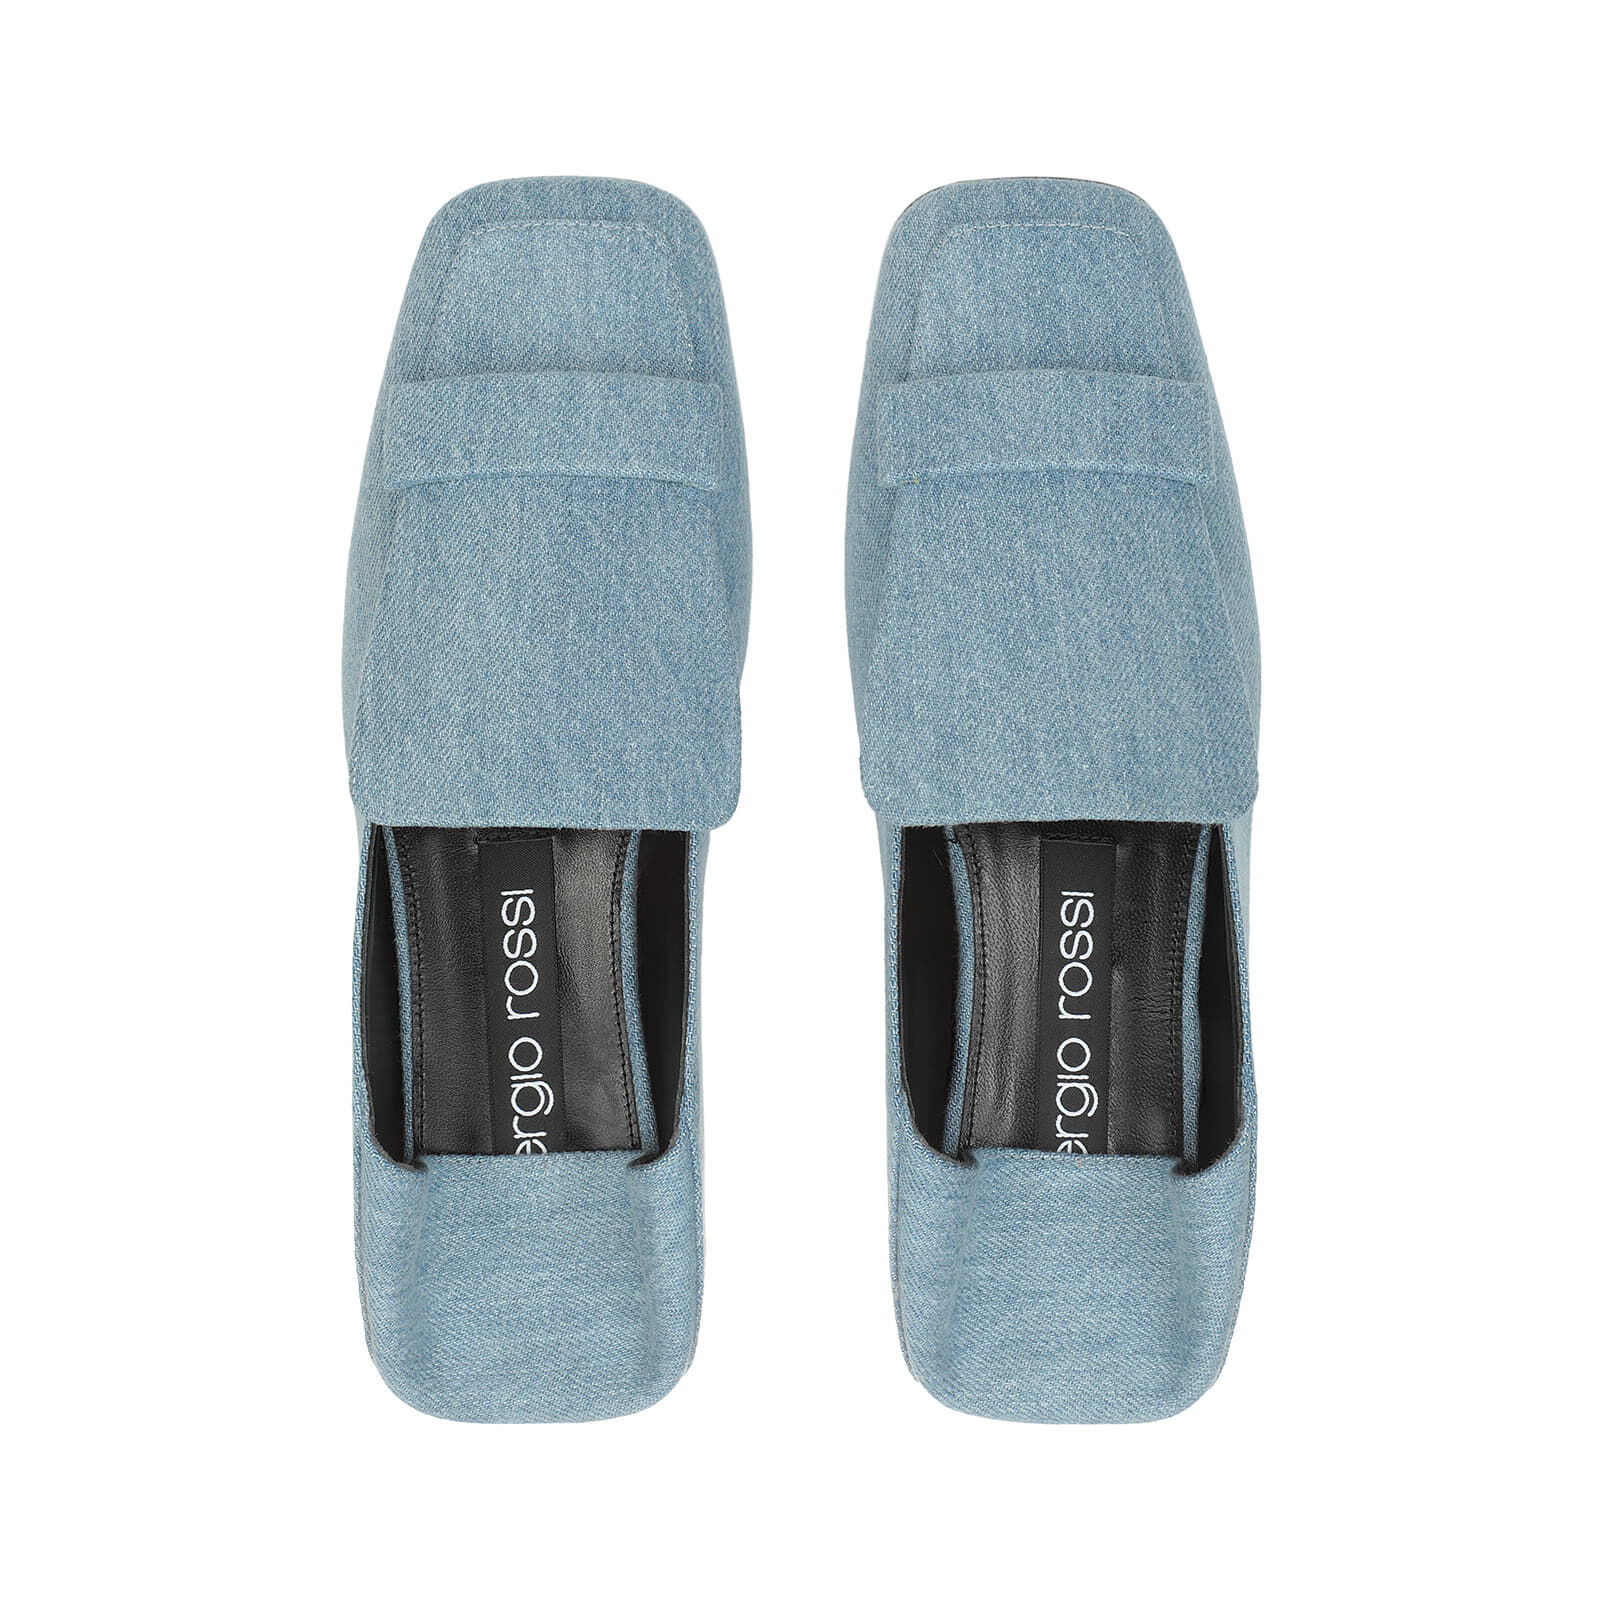 sr1 - Slippers Blue, 1